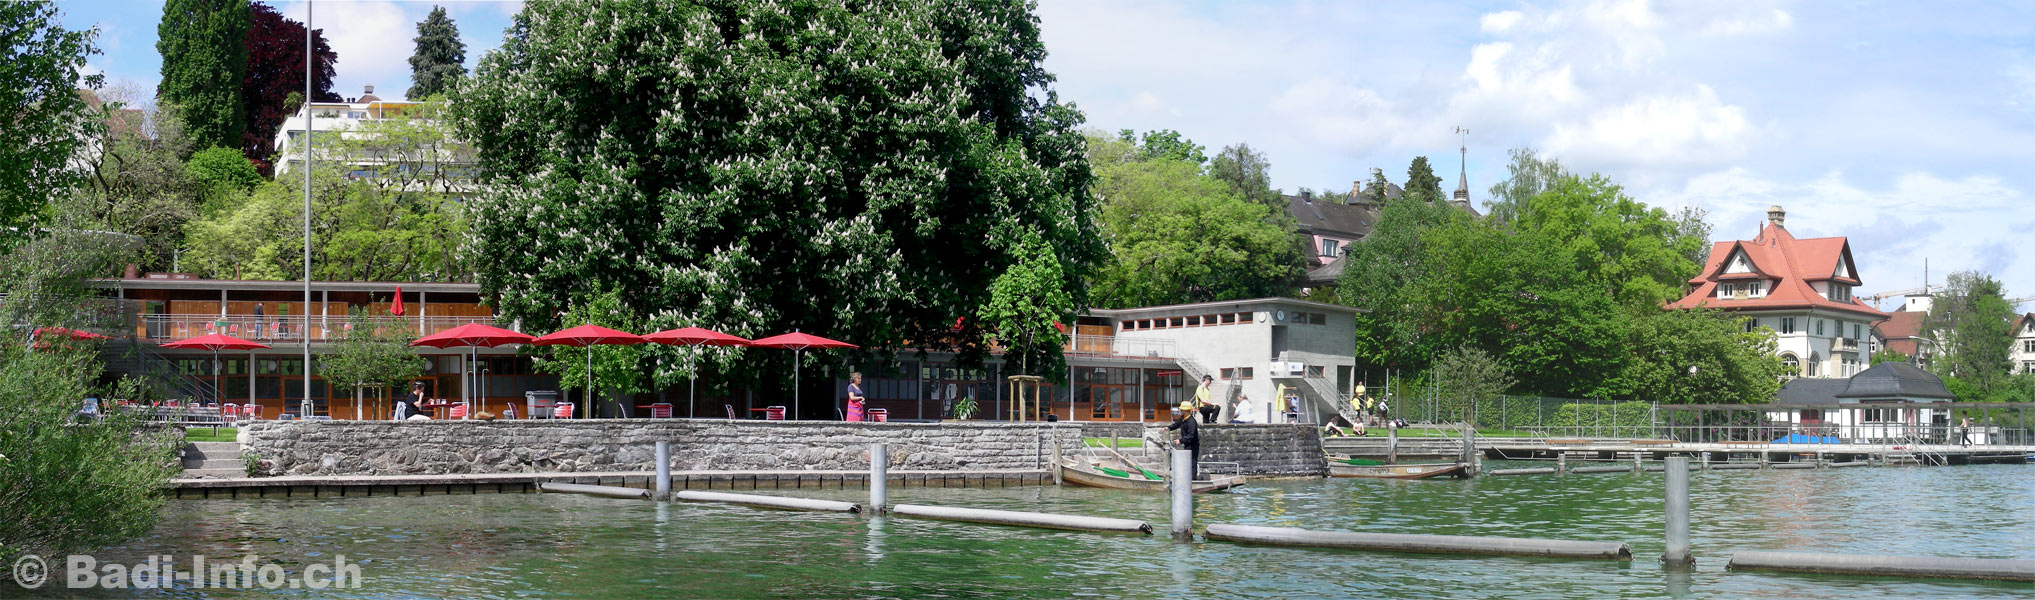 Zürich-Wollishofen Sommerbad